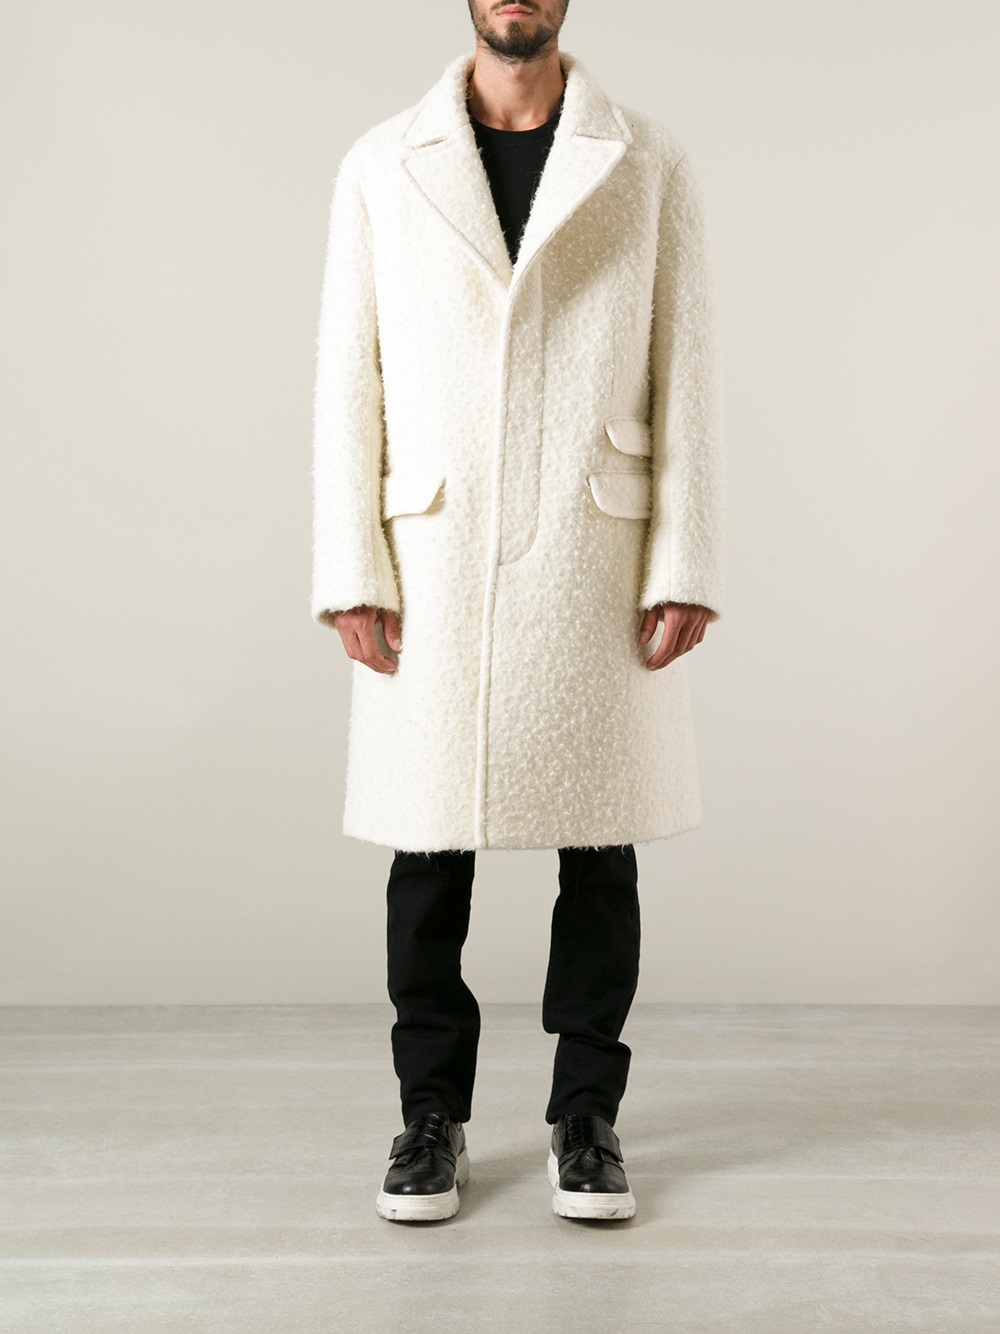 Lyst - Neil Barrett Single Breasted Overcoat in White for Men